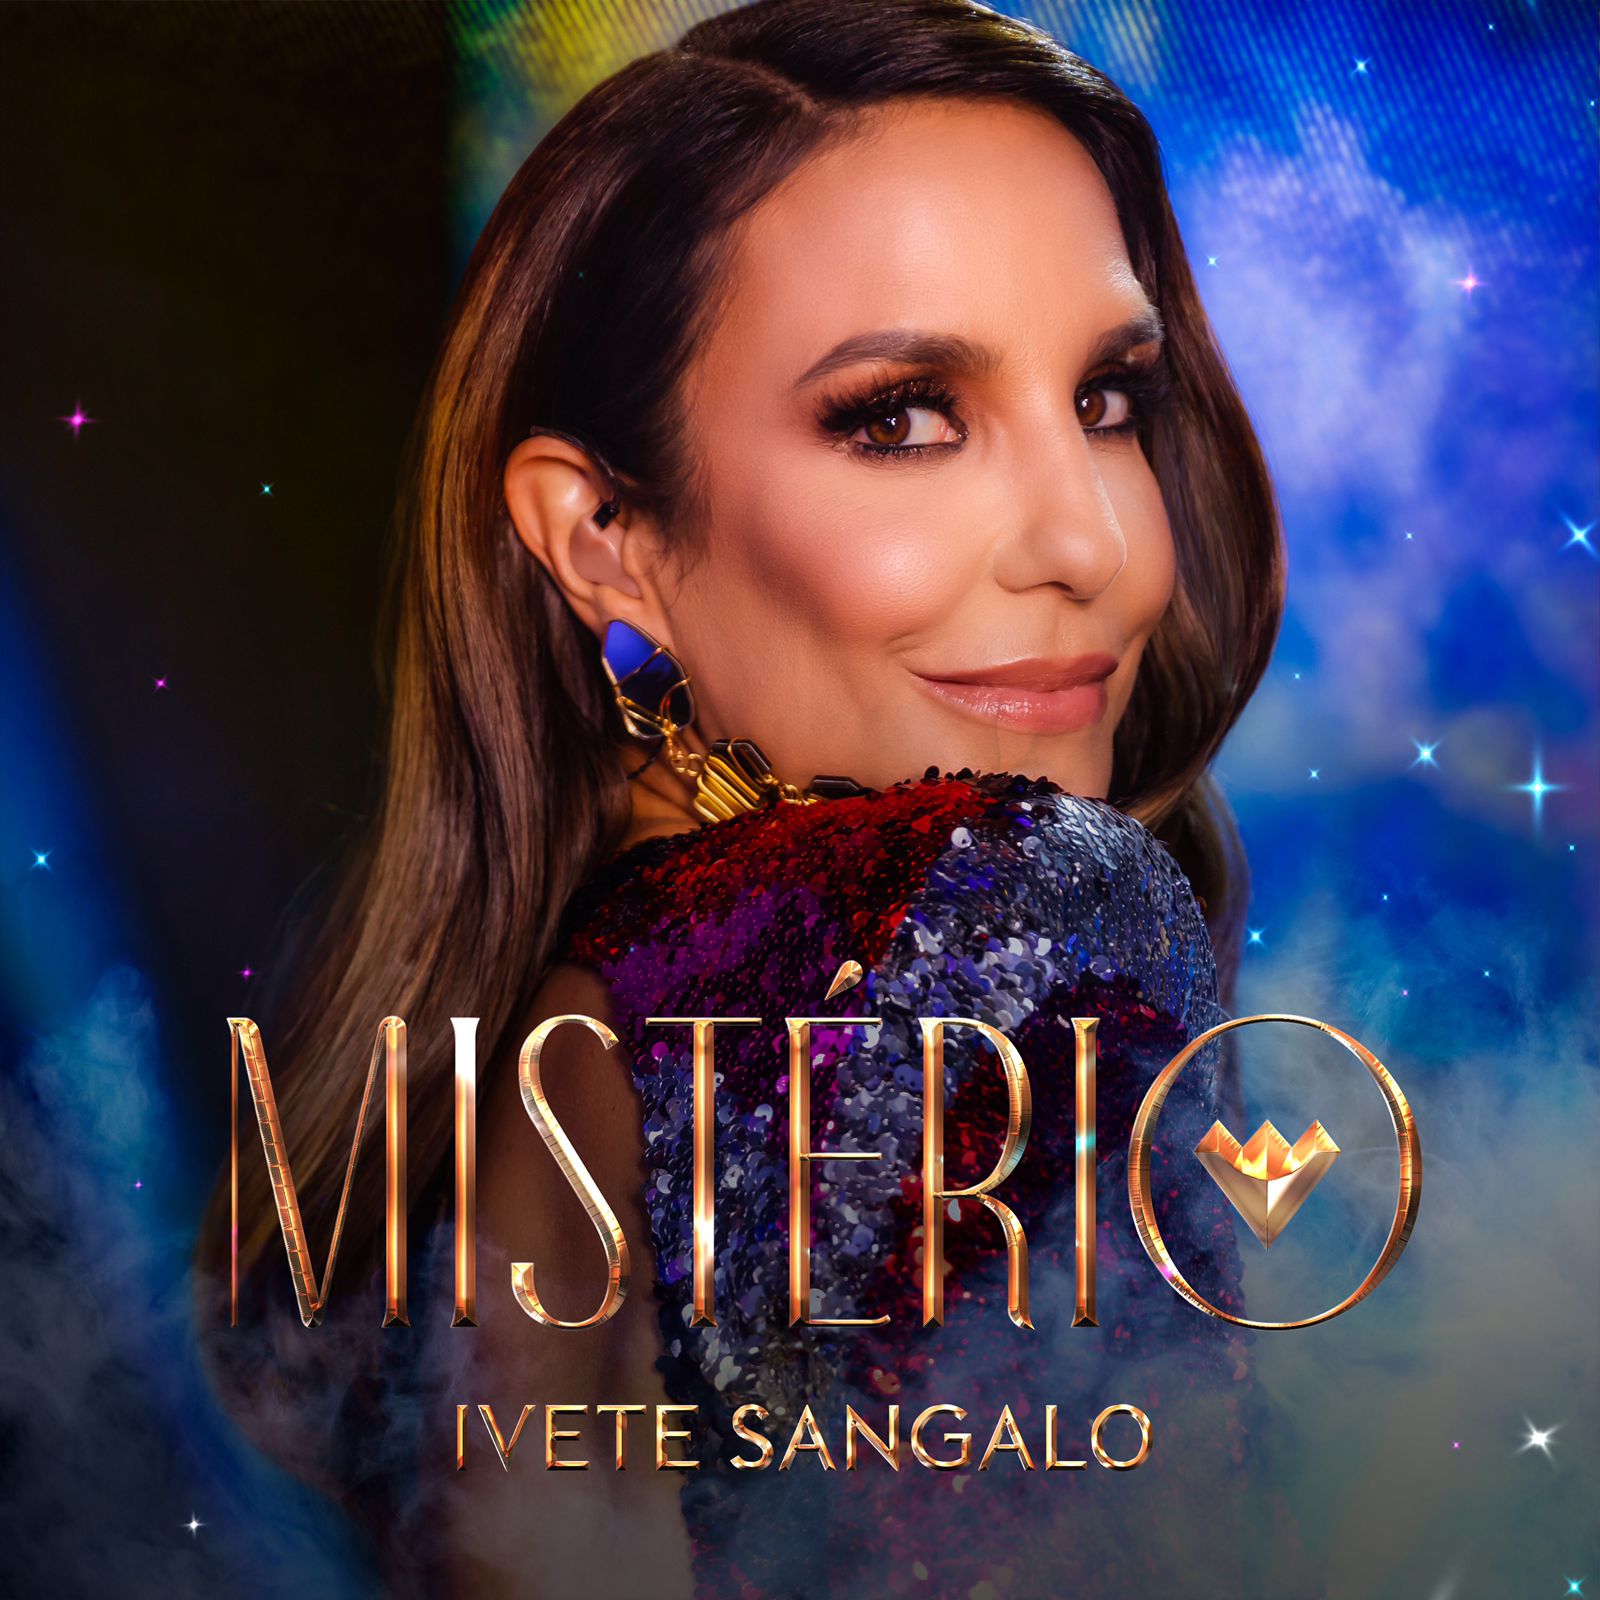 Ivete Sangalo libera a canção "Mistério".